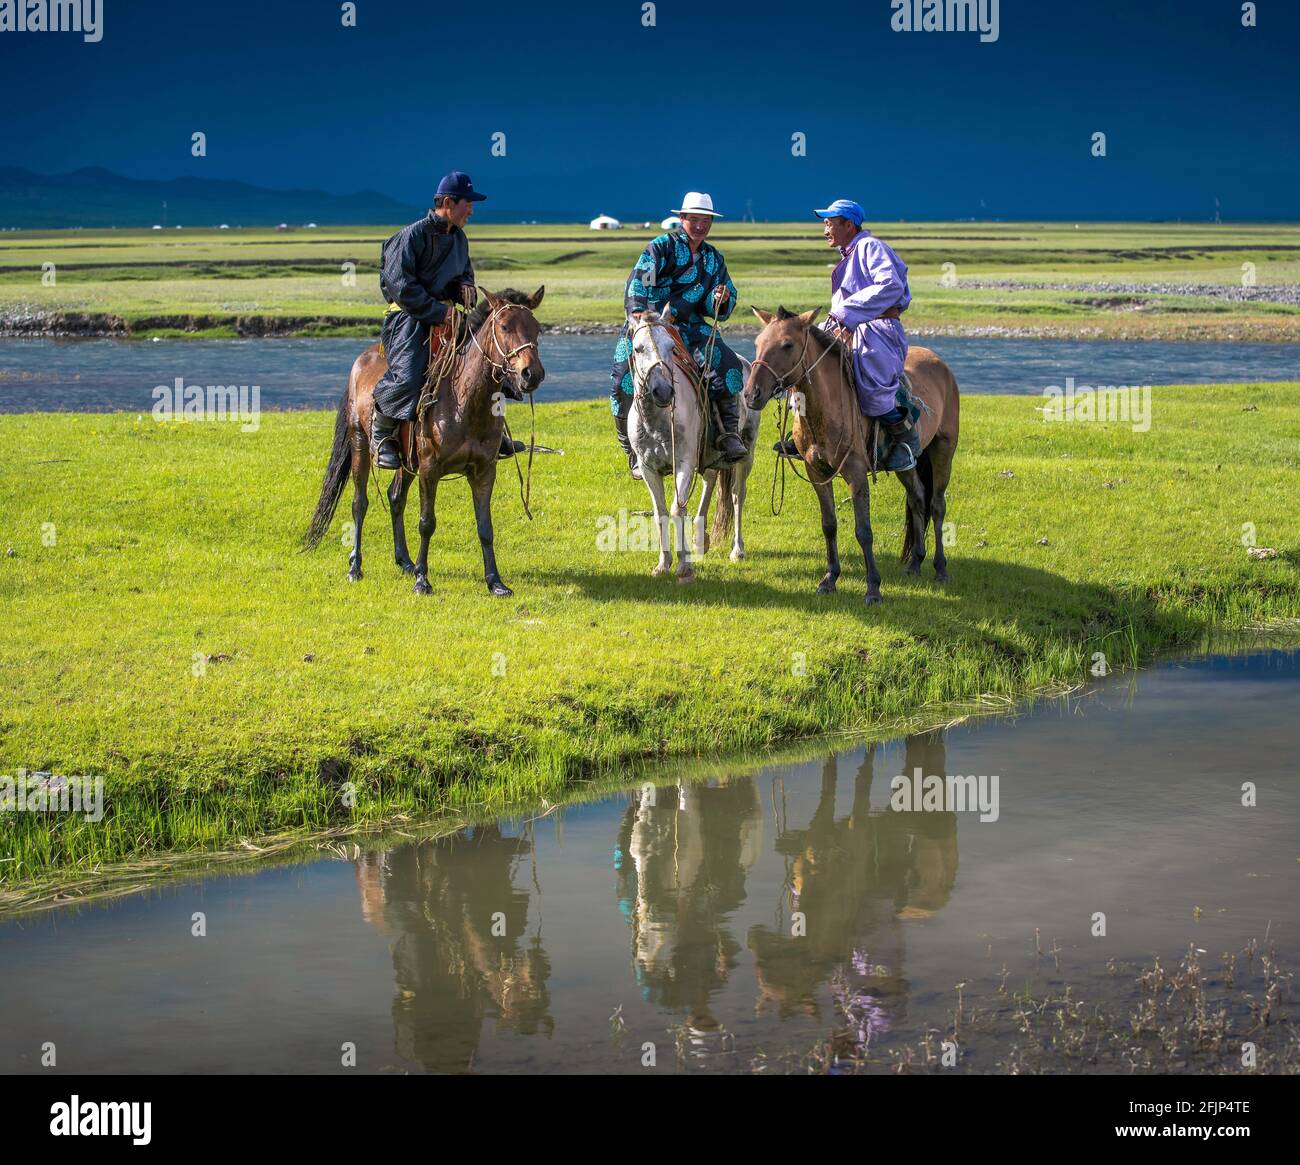 Nomad sur les chevaux, province d'Arkhangai, Mongolie Banque D'Images